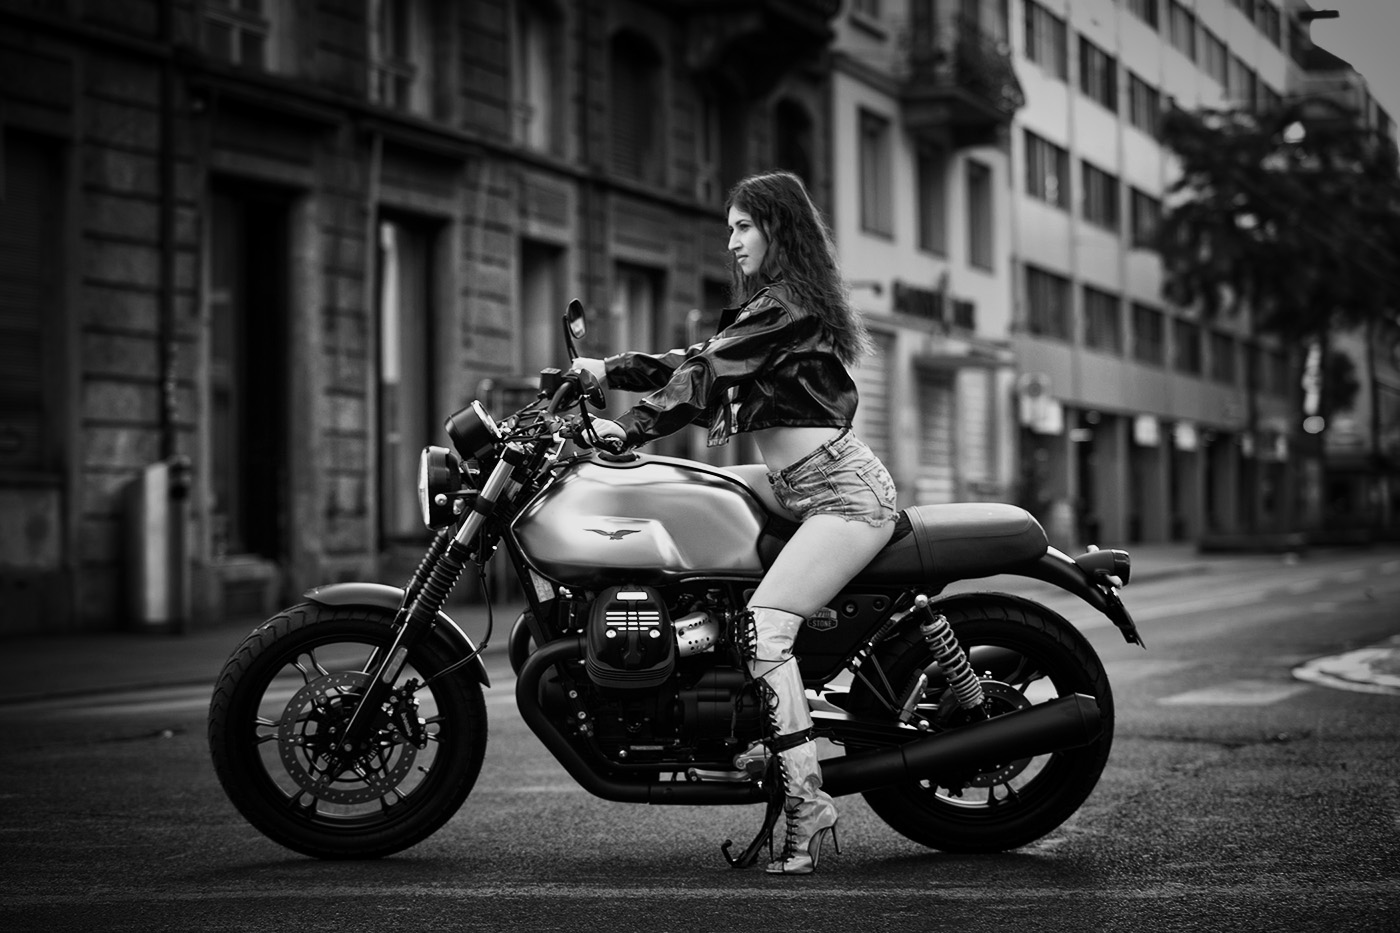 Motorrad Fotoshooting Gutschein